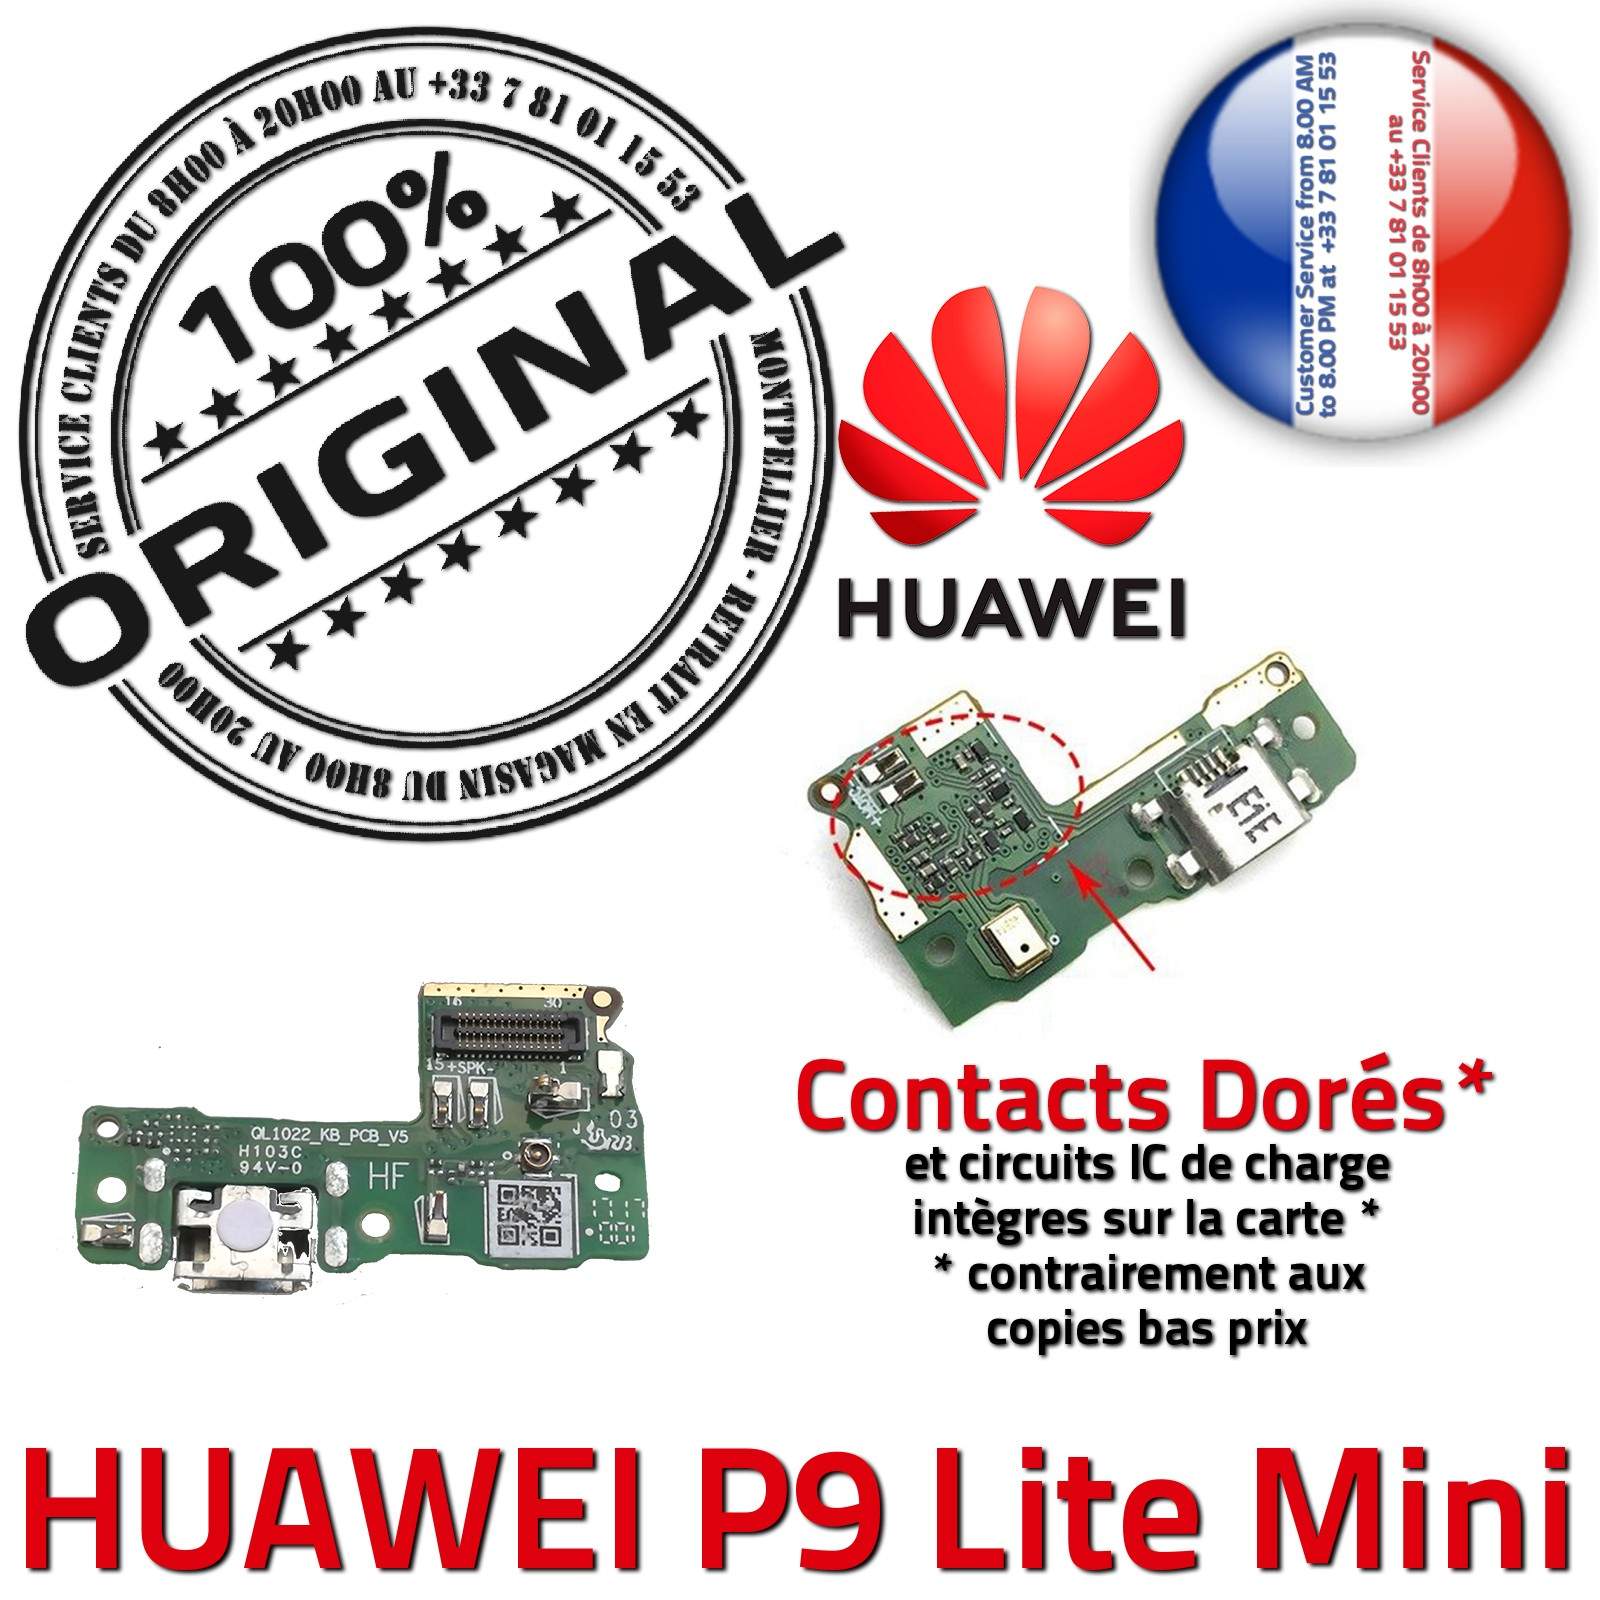 ORIGINAL Huawei P9 Lite Mini Microphone Téléphone Connecteur Charge Prise Chargeur USB Nappe OFFICIELLE Qualité Antenne RESEAU